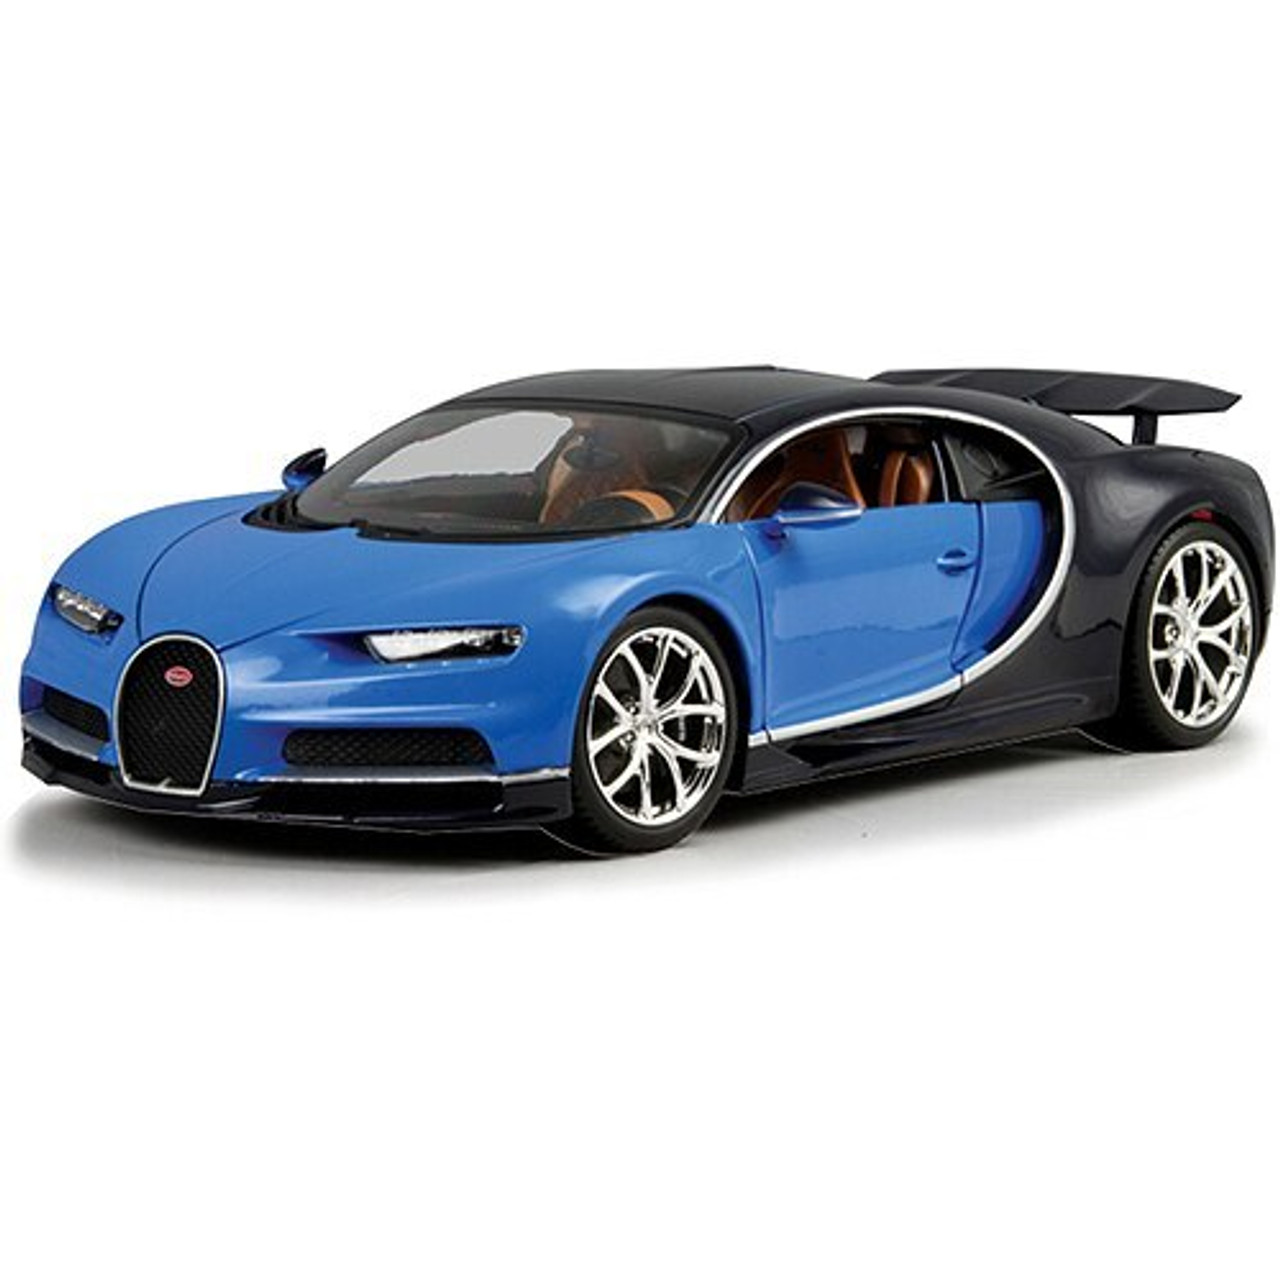 Bugatti Chiron Supercar - blue 1:18 Scale Diecast Model by Bburago